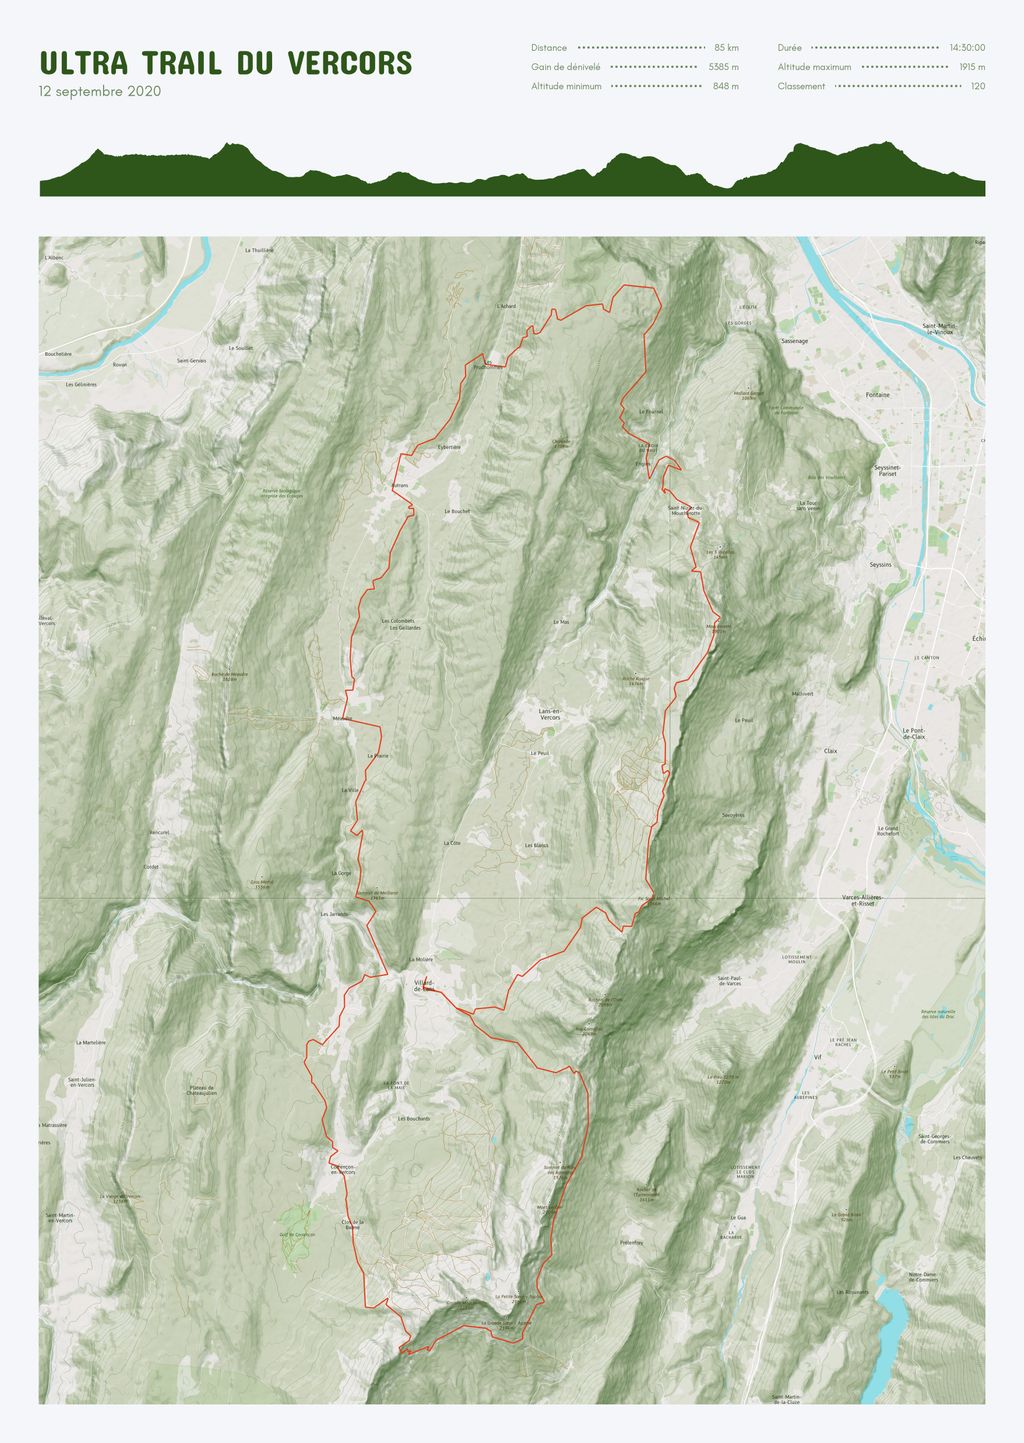 Póster con un mapa de Ultra Trail du Vercors